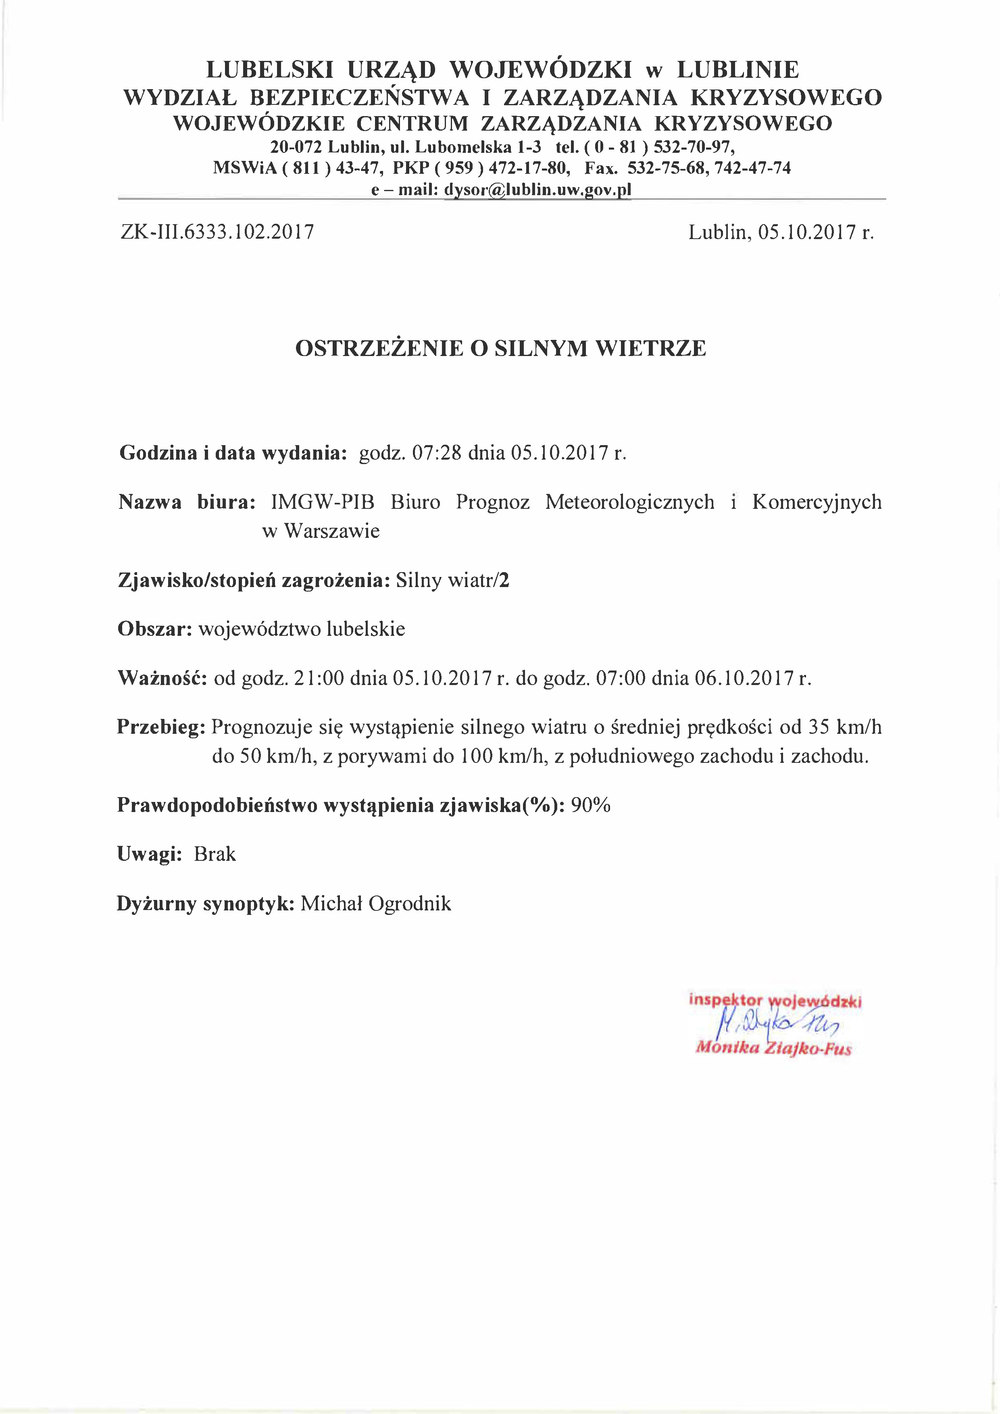 Zjawisko/stopień zagrożenia: Silny wiatr/2 Obszar: województwo lubelskie